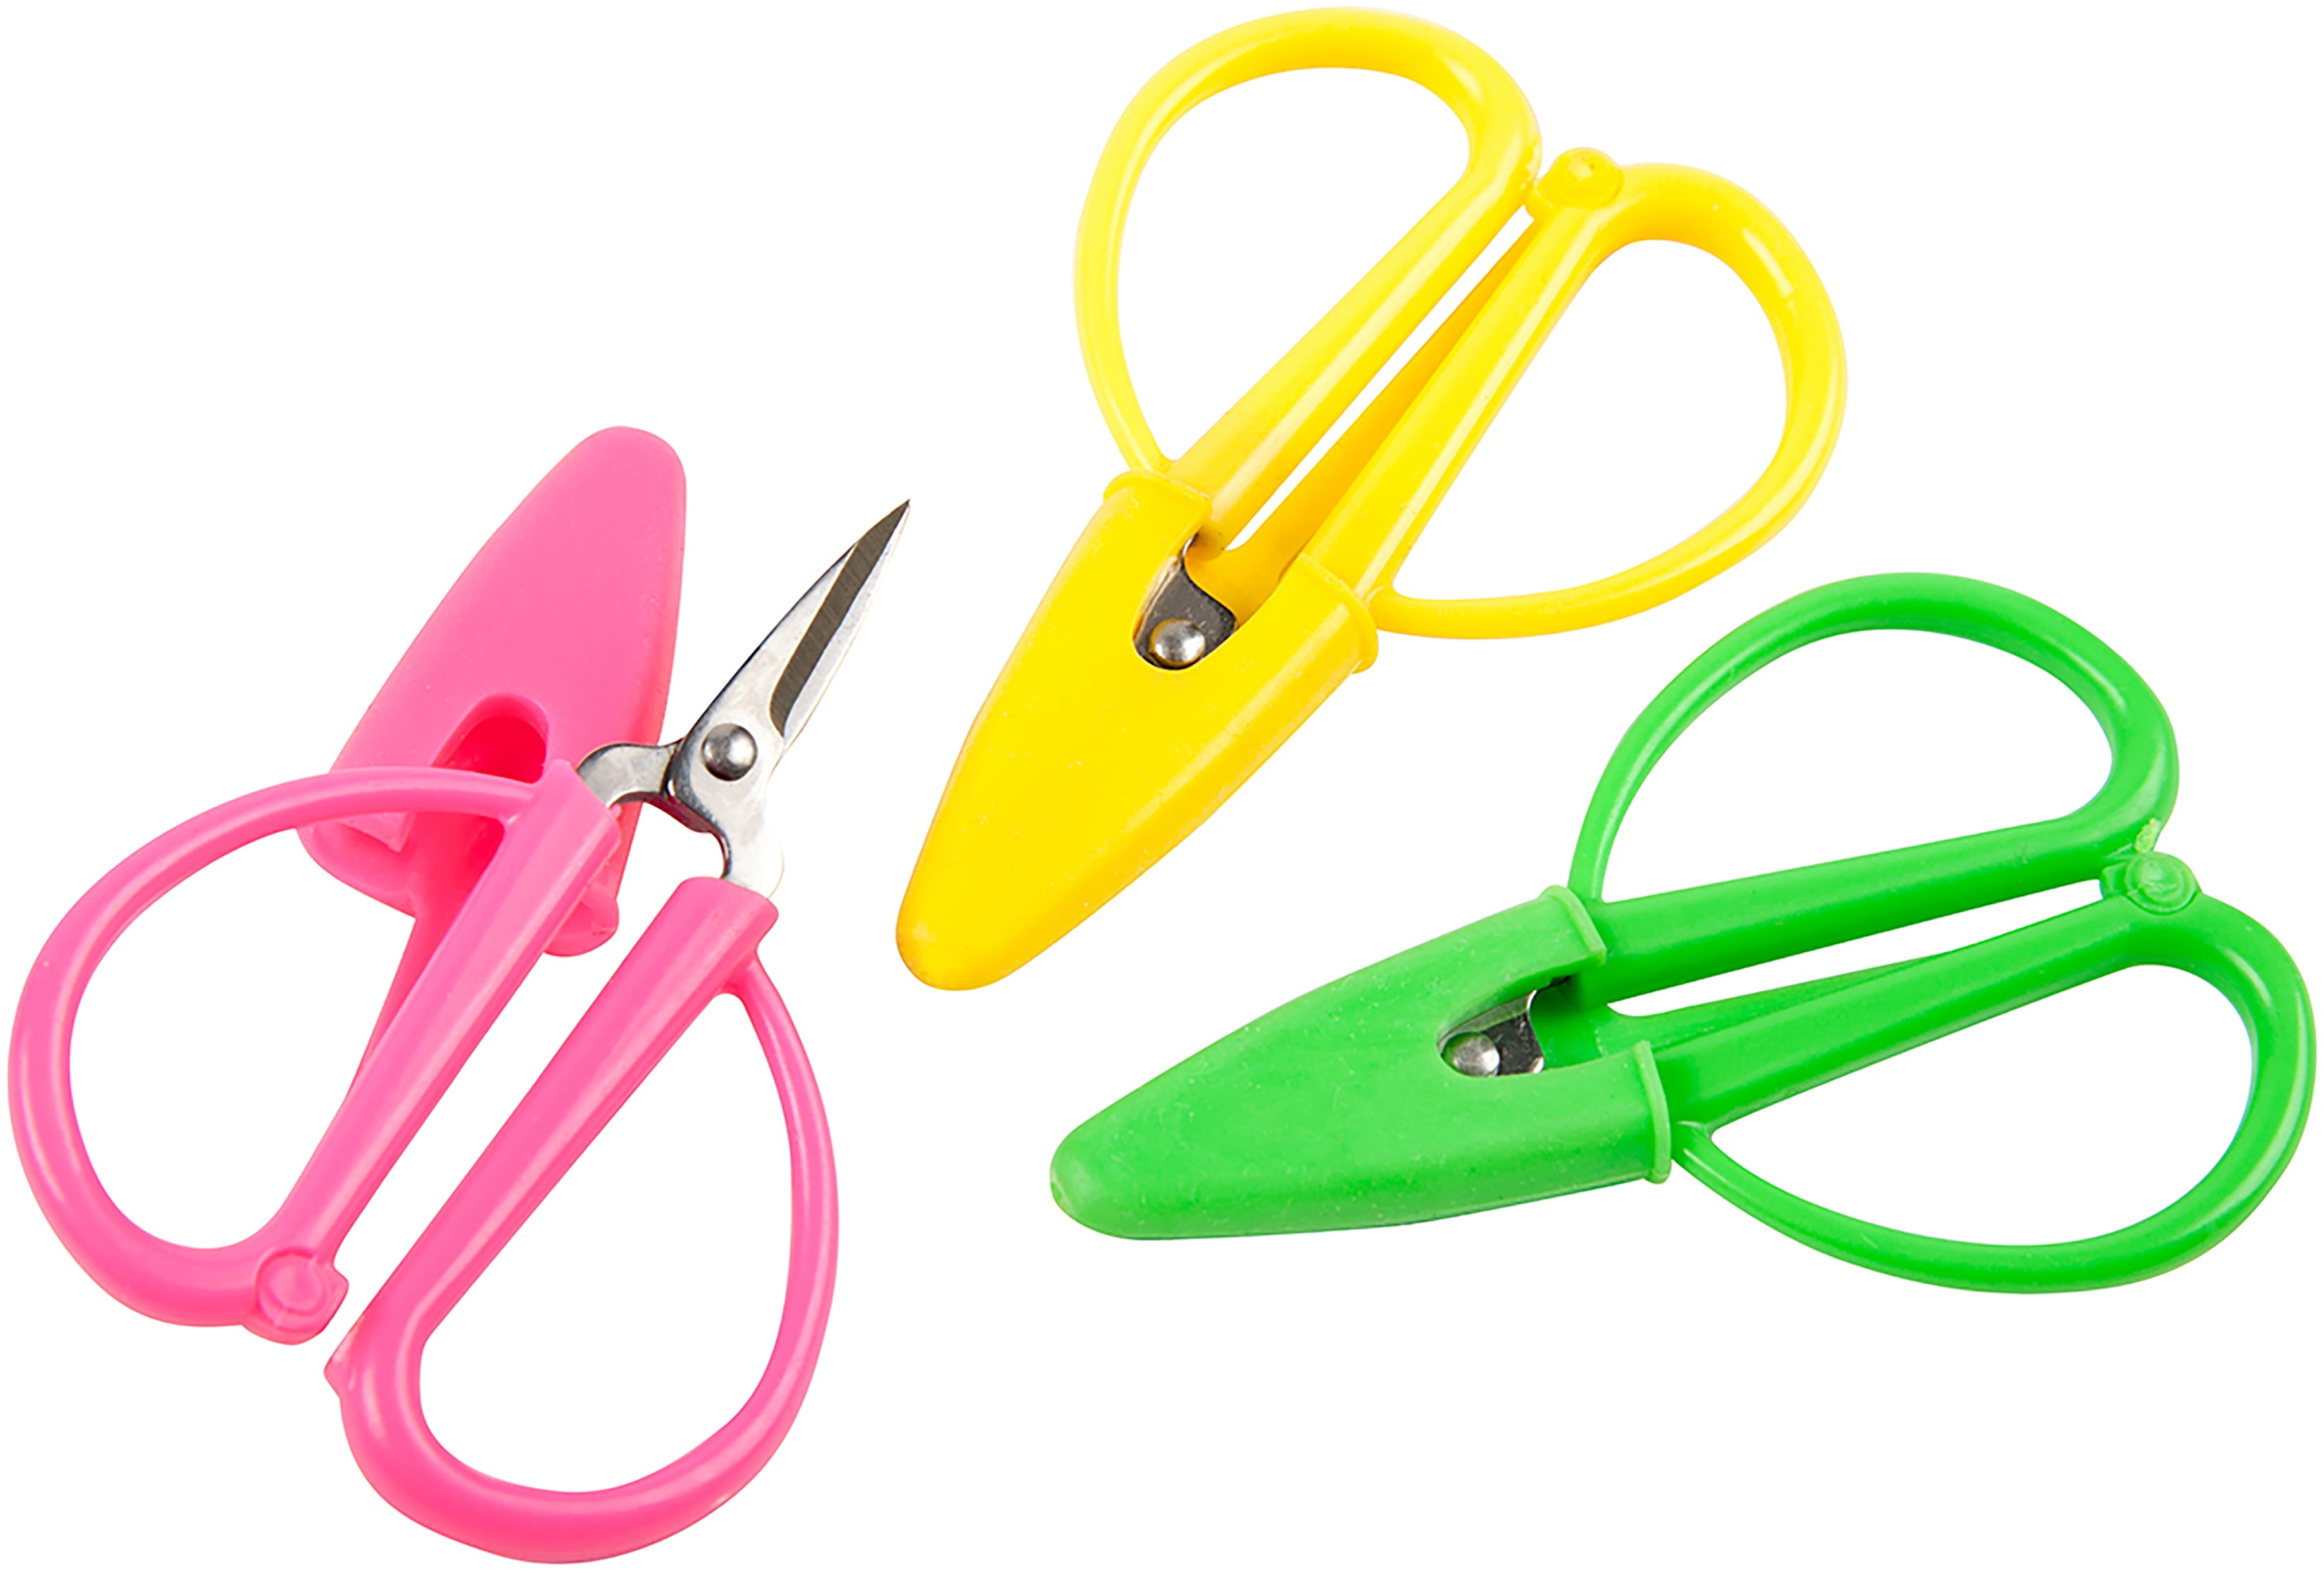 Dynarex Mini Scissors, 3.5 4190